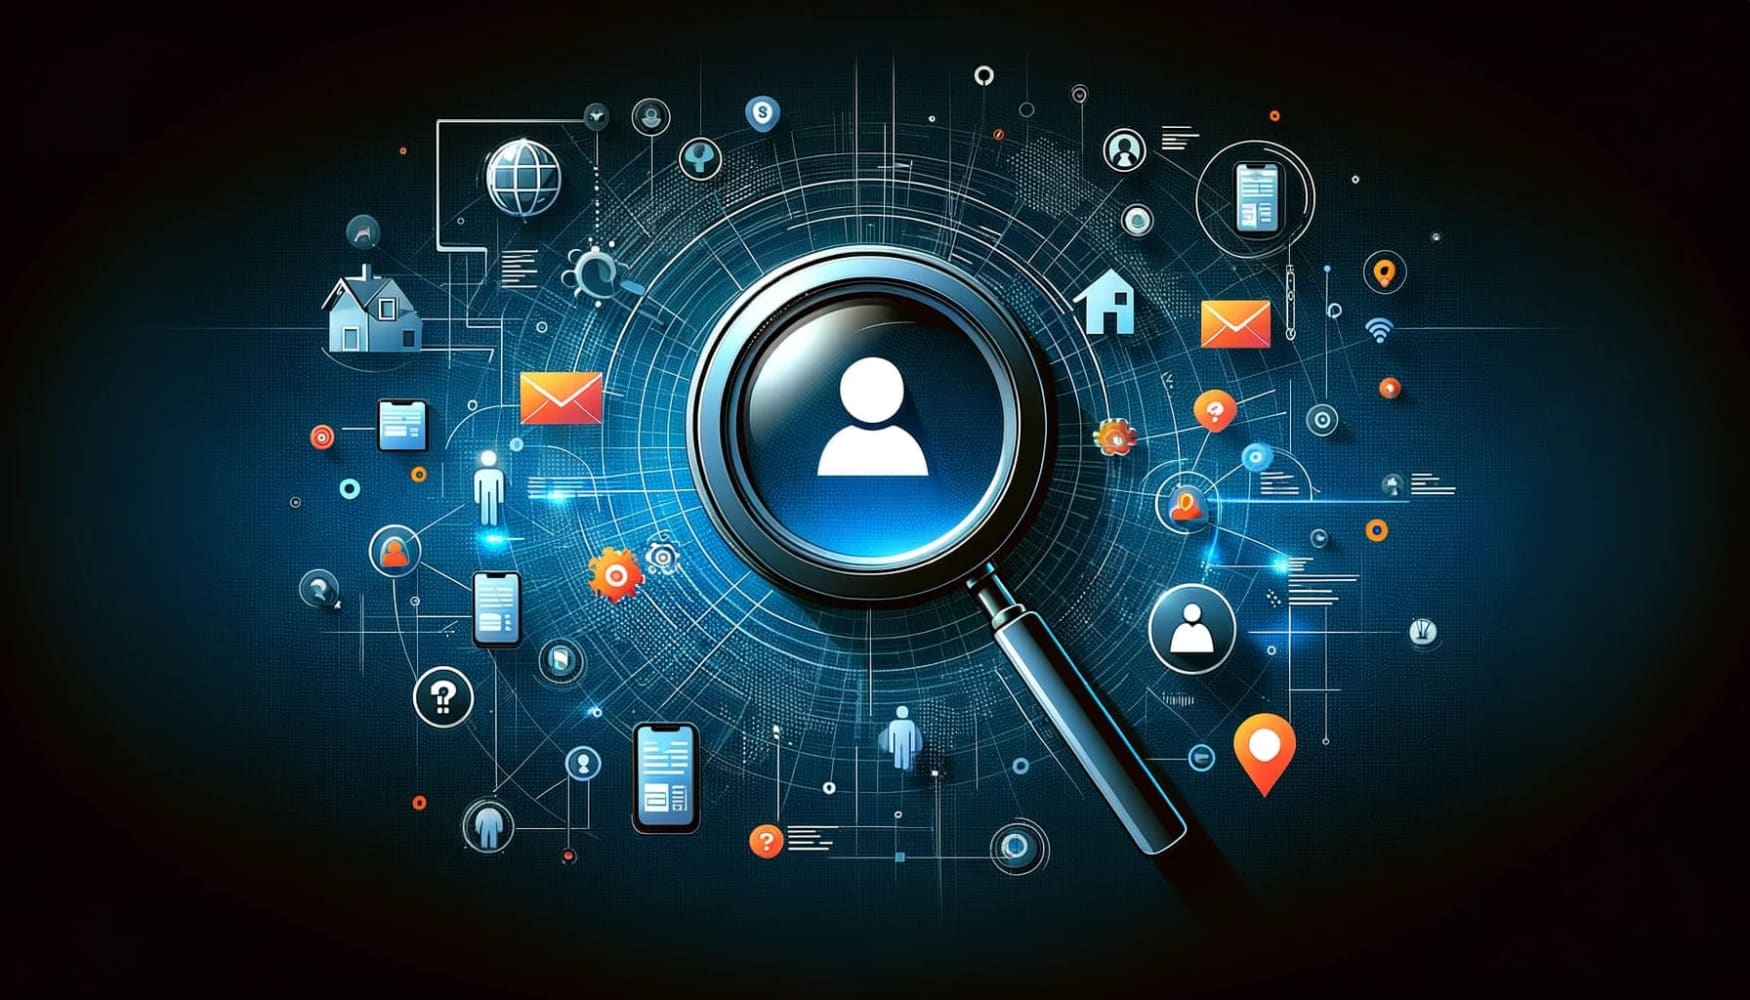 Illustration d'une loupe sur une carte numérique, entourée d'icônes représentant une personne, une maison, un téléphone et un courriel, symbolisant le processus de recherche de l'adresse d'une personne à l'aide de divers outils de recherche.